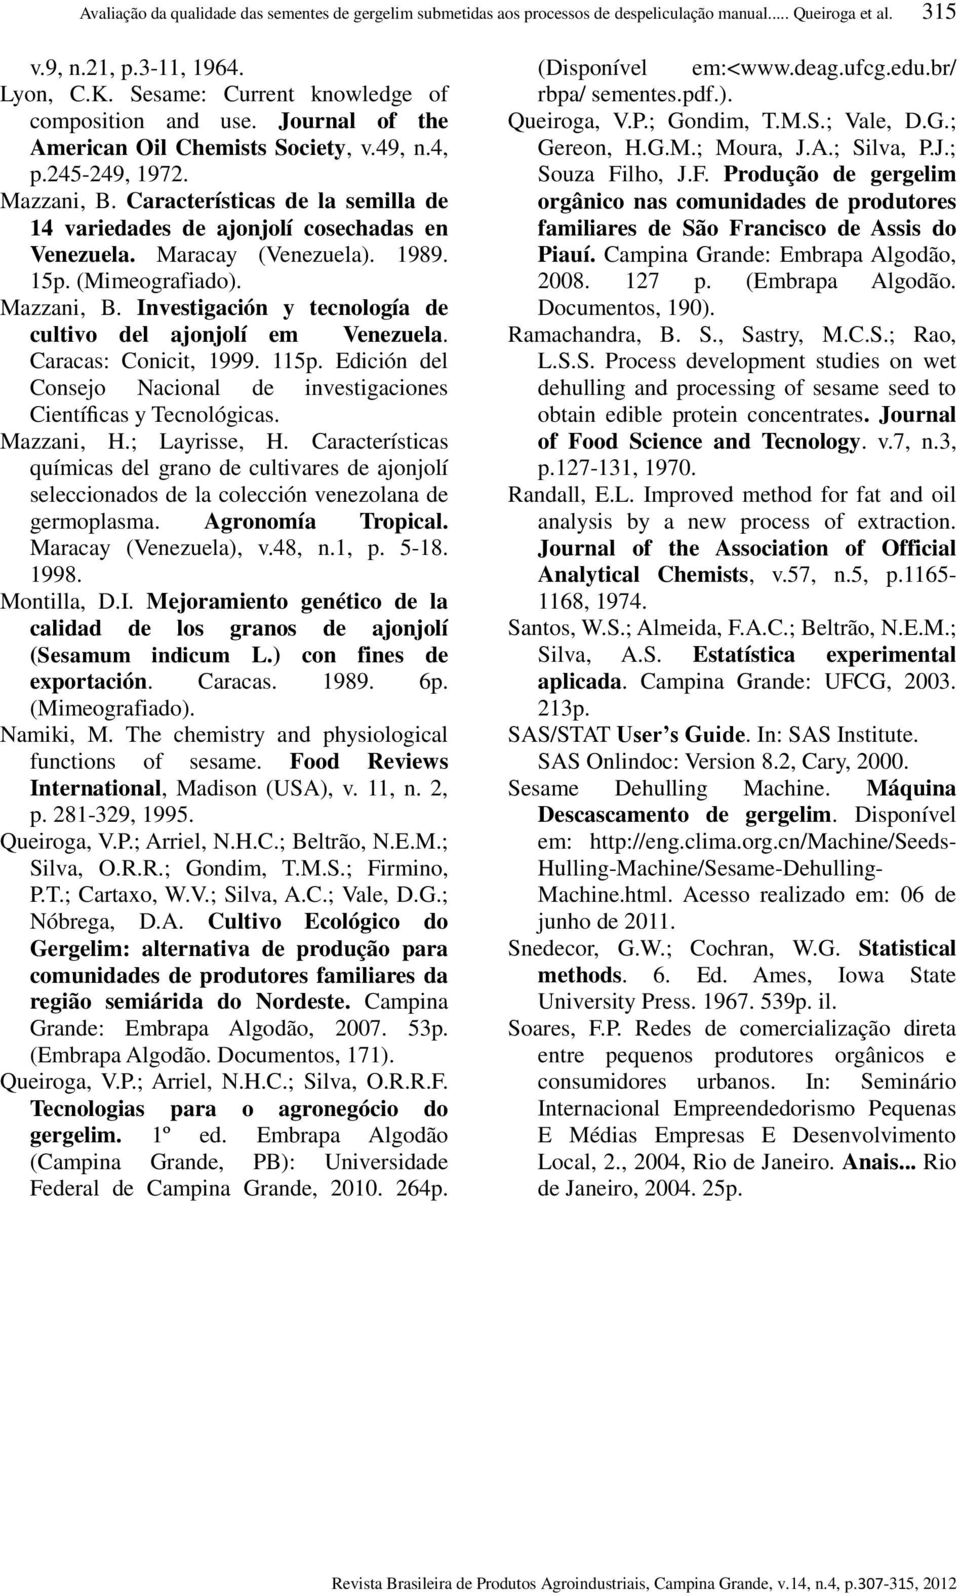 Características de la semilla de 14 variedades de ajonjolí cosechadas en Venezuela. Maracay (Venezuela). 1989. 15p. (Mimeografiado). Mazzani, B.